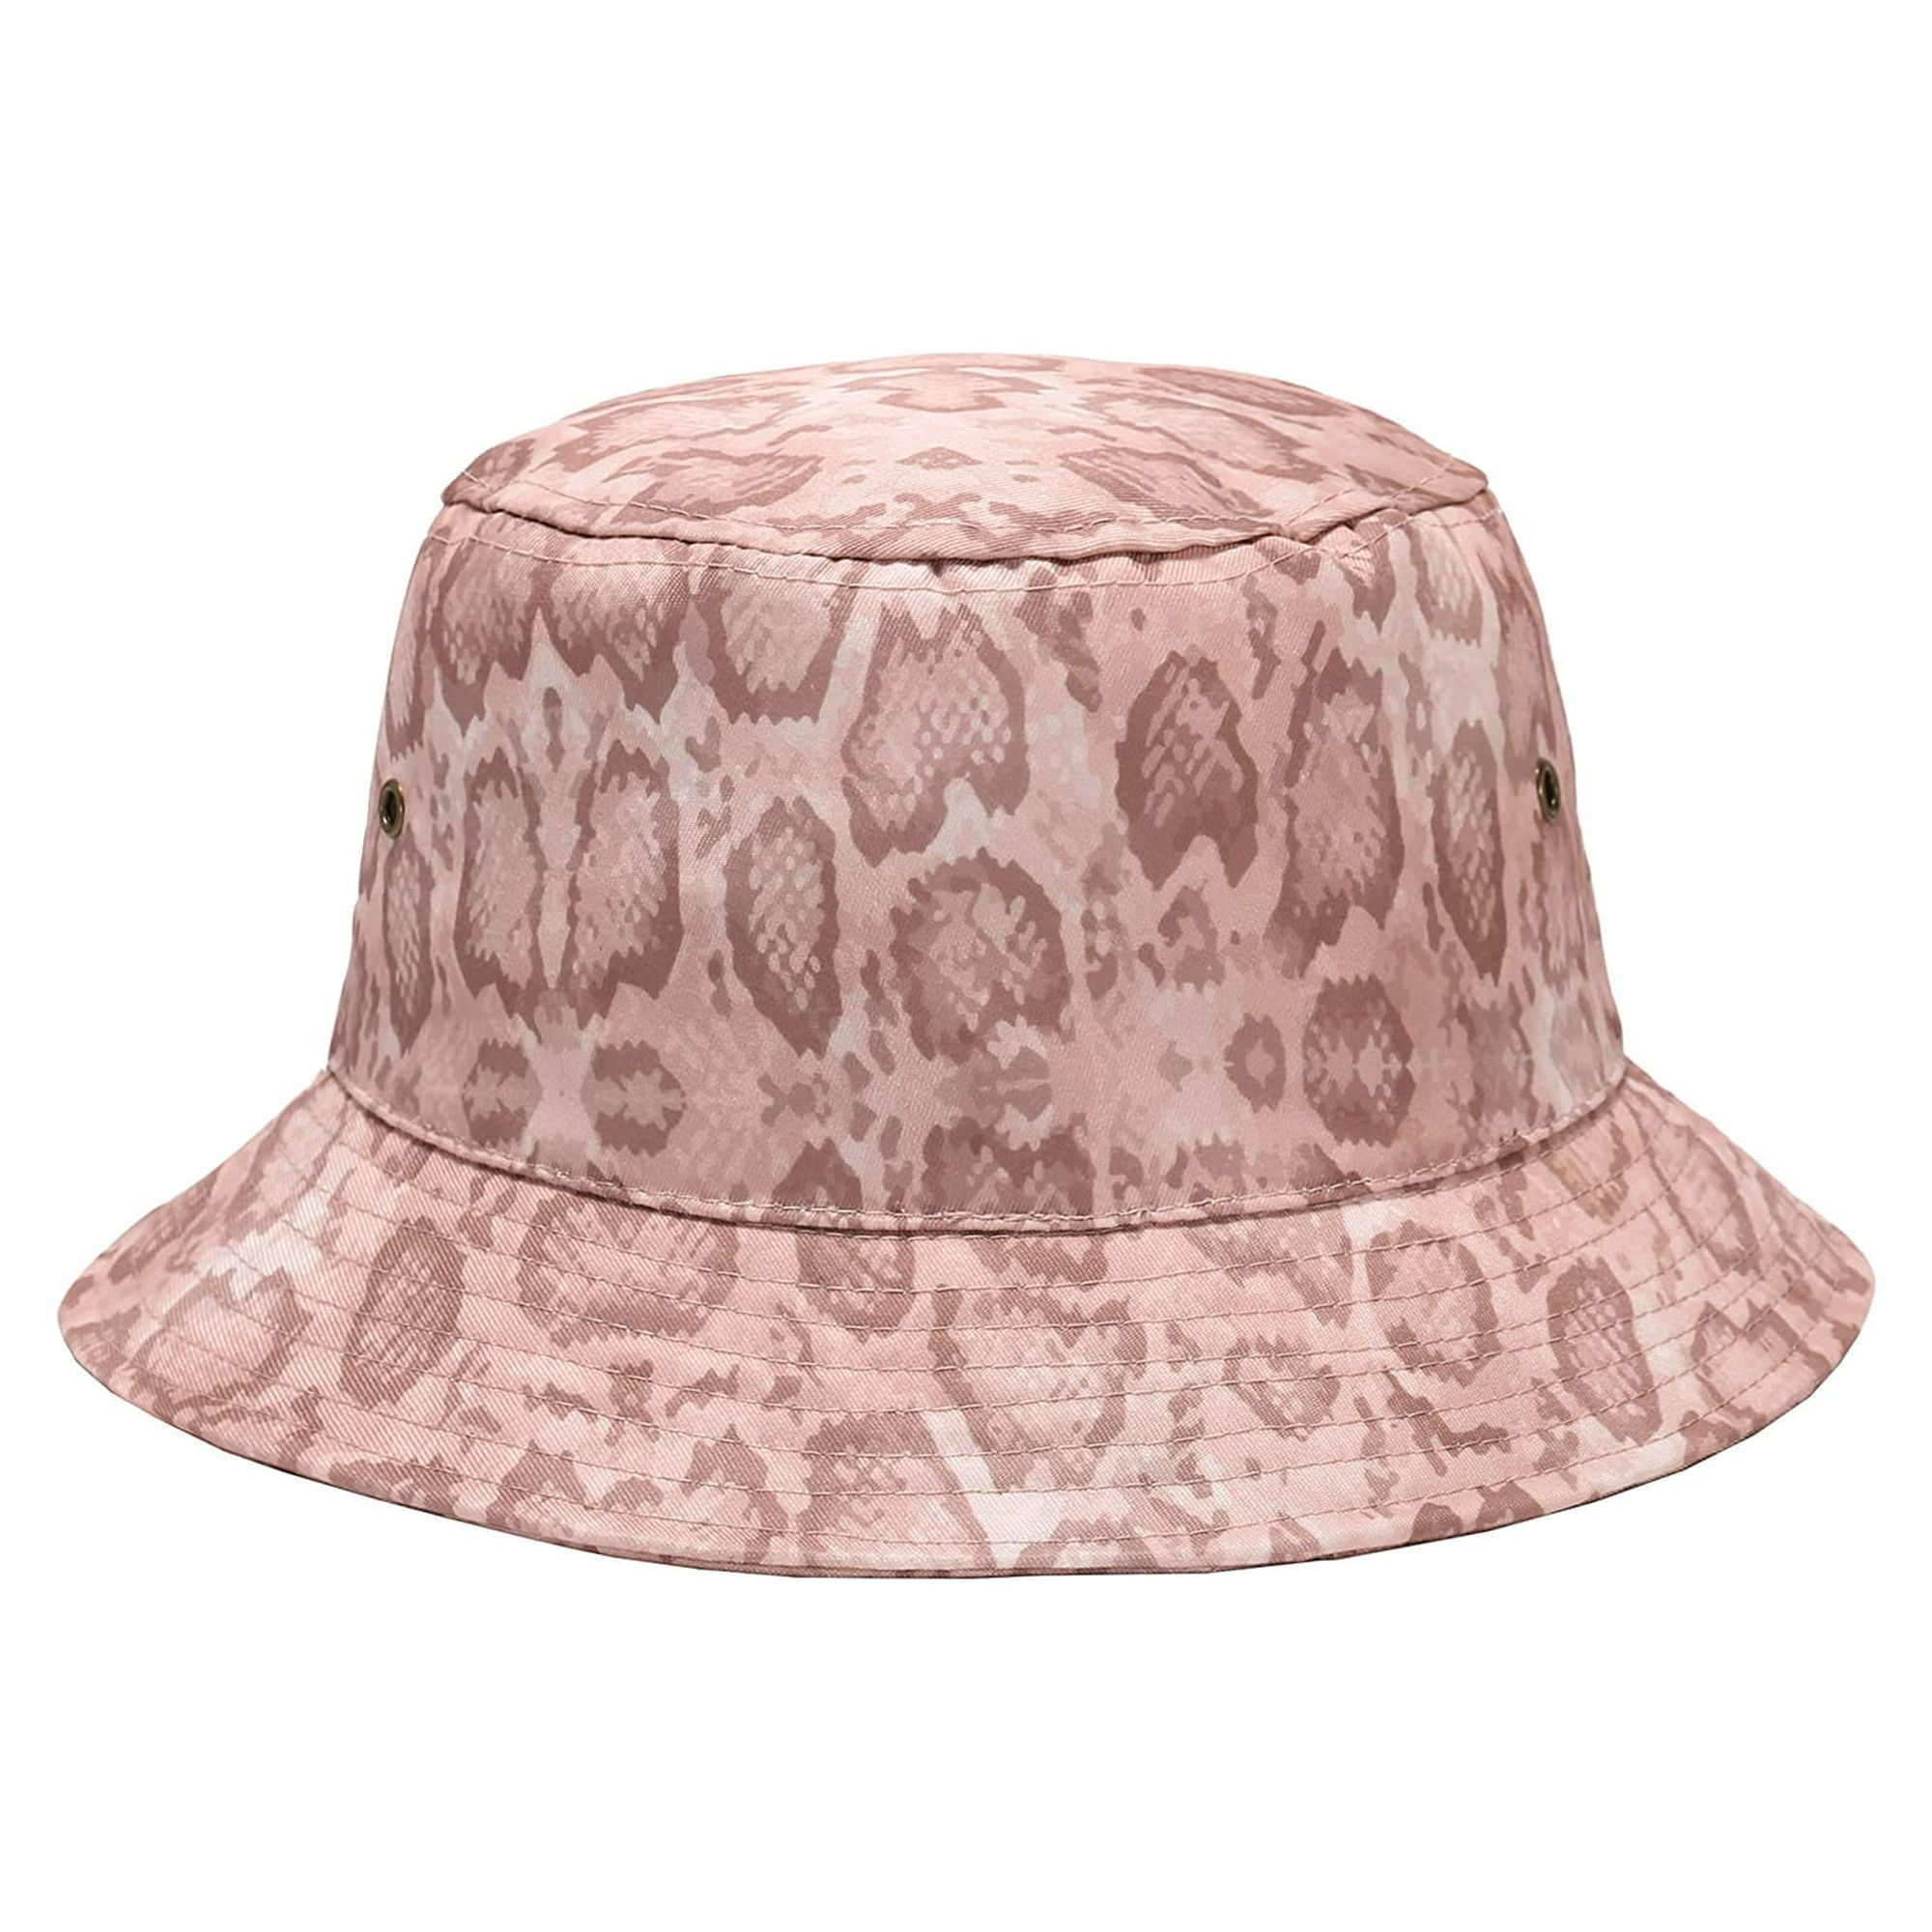 Daisy Rose Bucket Hat - Unisex Packable Summer Travel Beach Sun Hat - Pink Snake